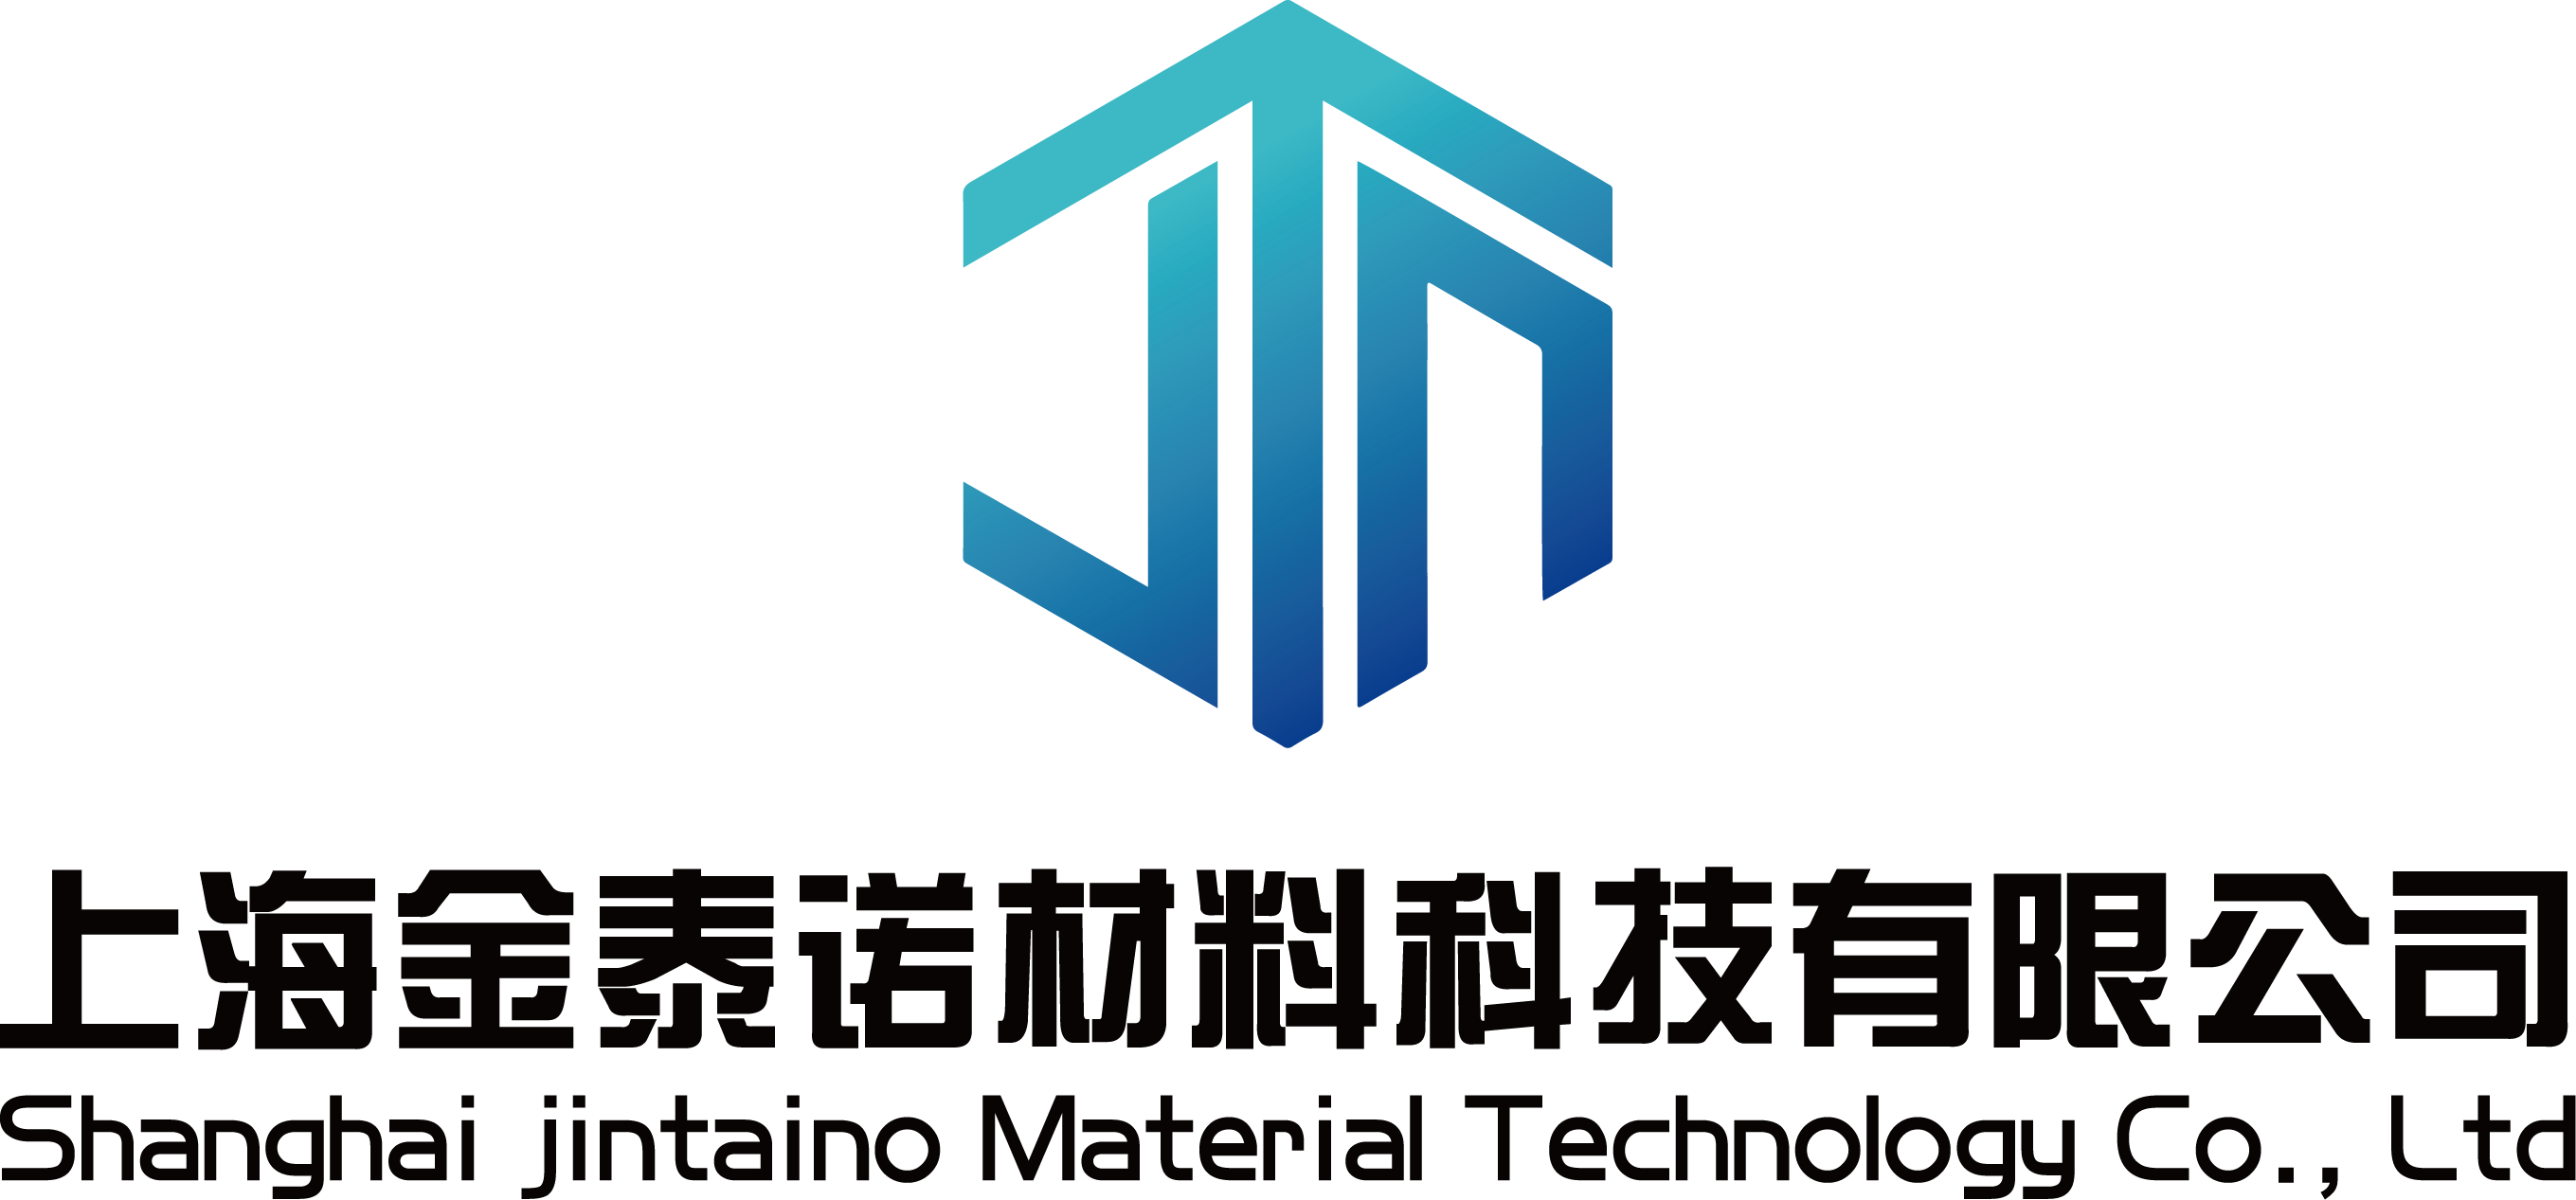 上海金泰诺材料科技有限公司